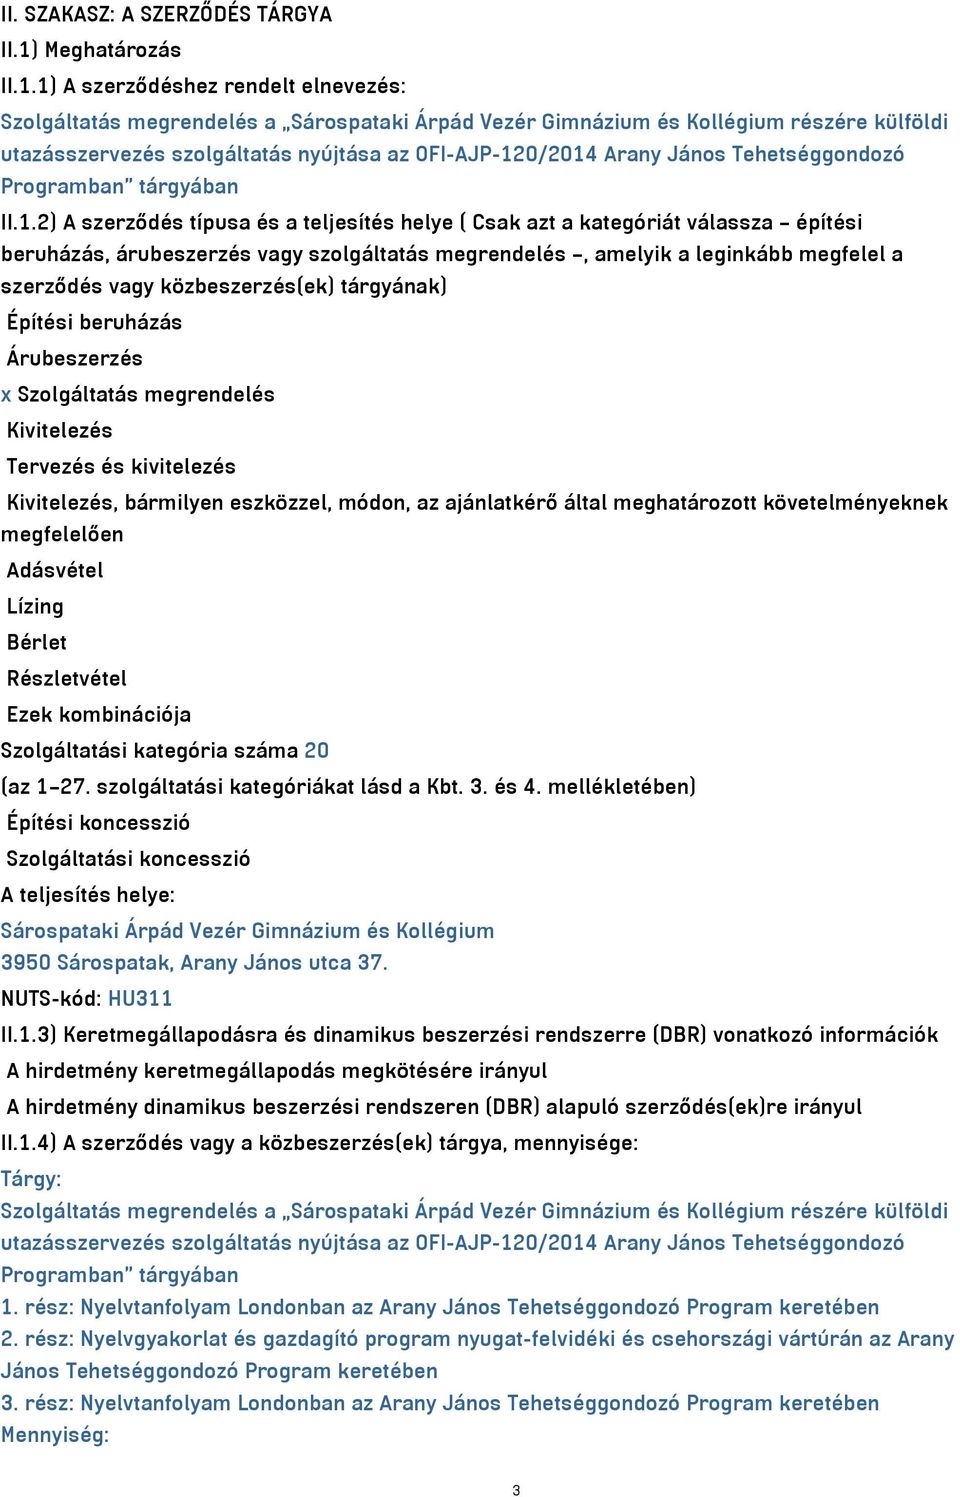 1) A szerződéshez rendelt elnevezés: Szolgáltatás megrendelés a Sárospataki Árpád Vezér Gimnázium és Kollégium részére külföldi utazásszervezés szolgáltatás nyújtása az OFI-AJP-120/2014 Arany János